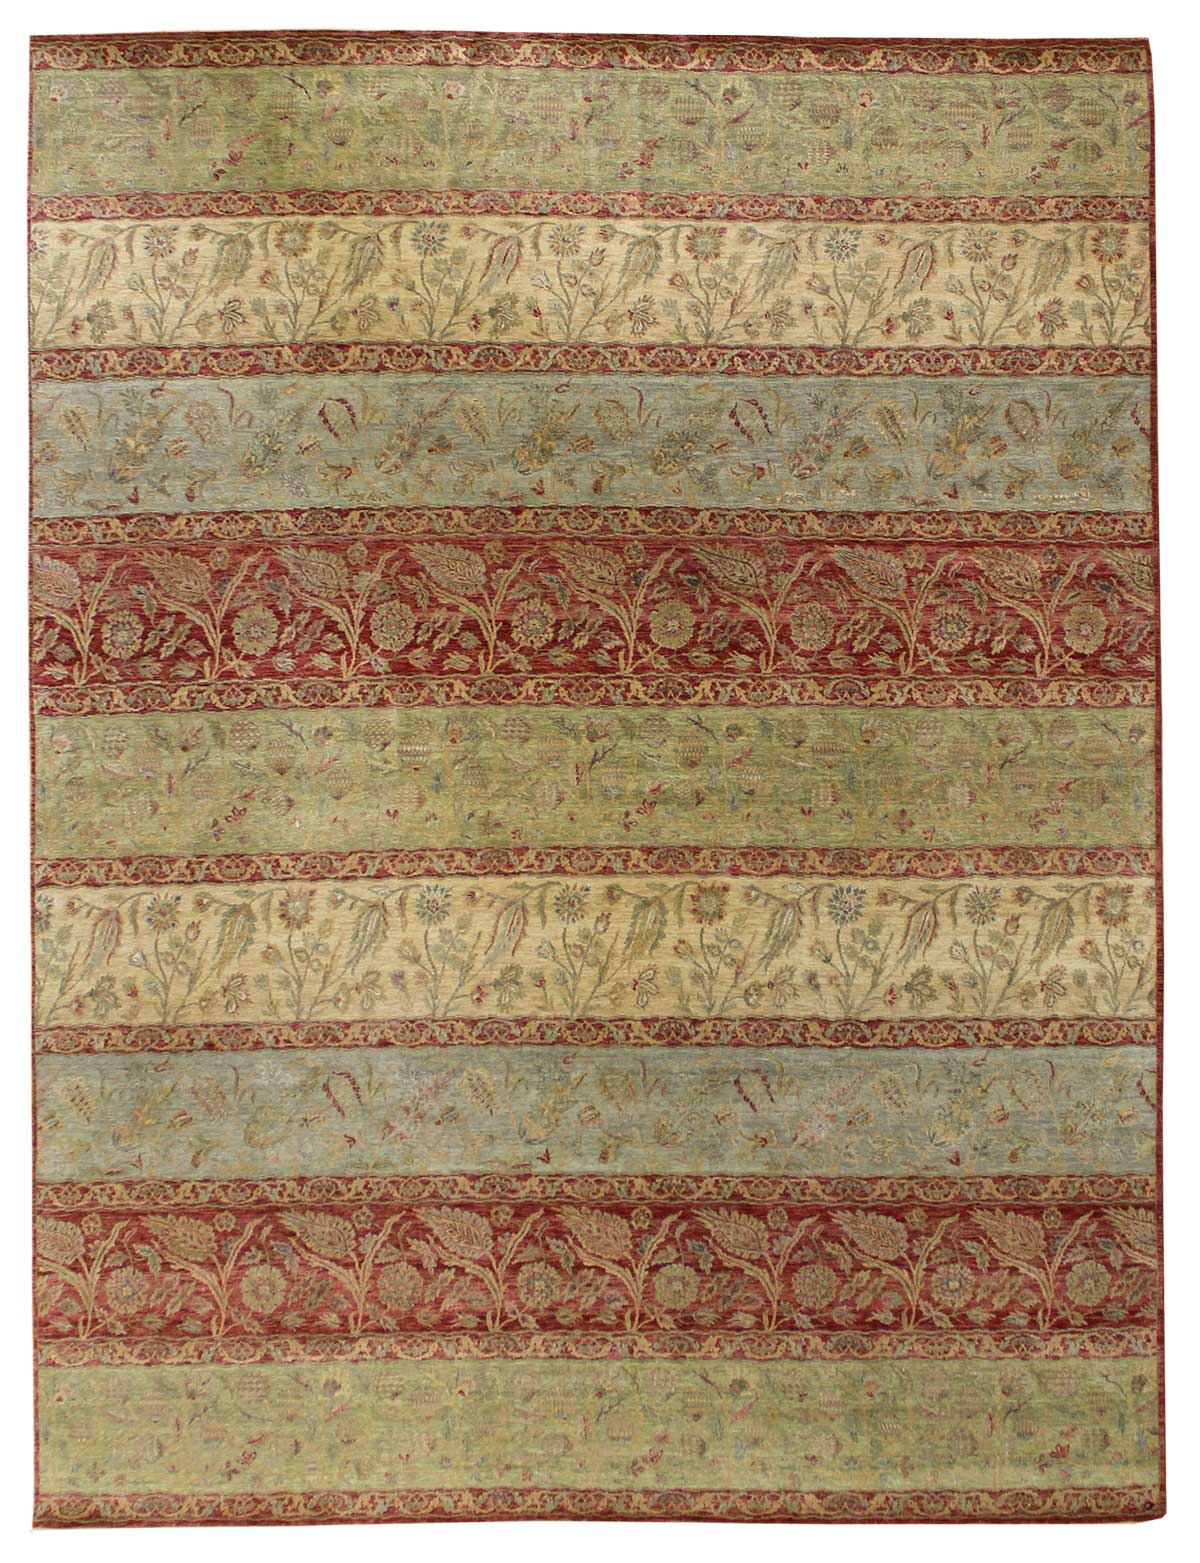 Moghul Panels Handwoven Traditional Rug